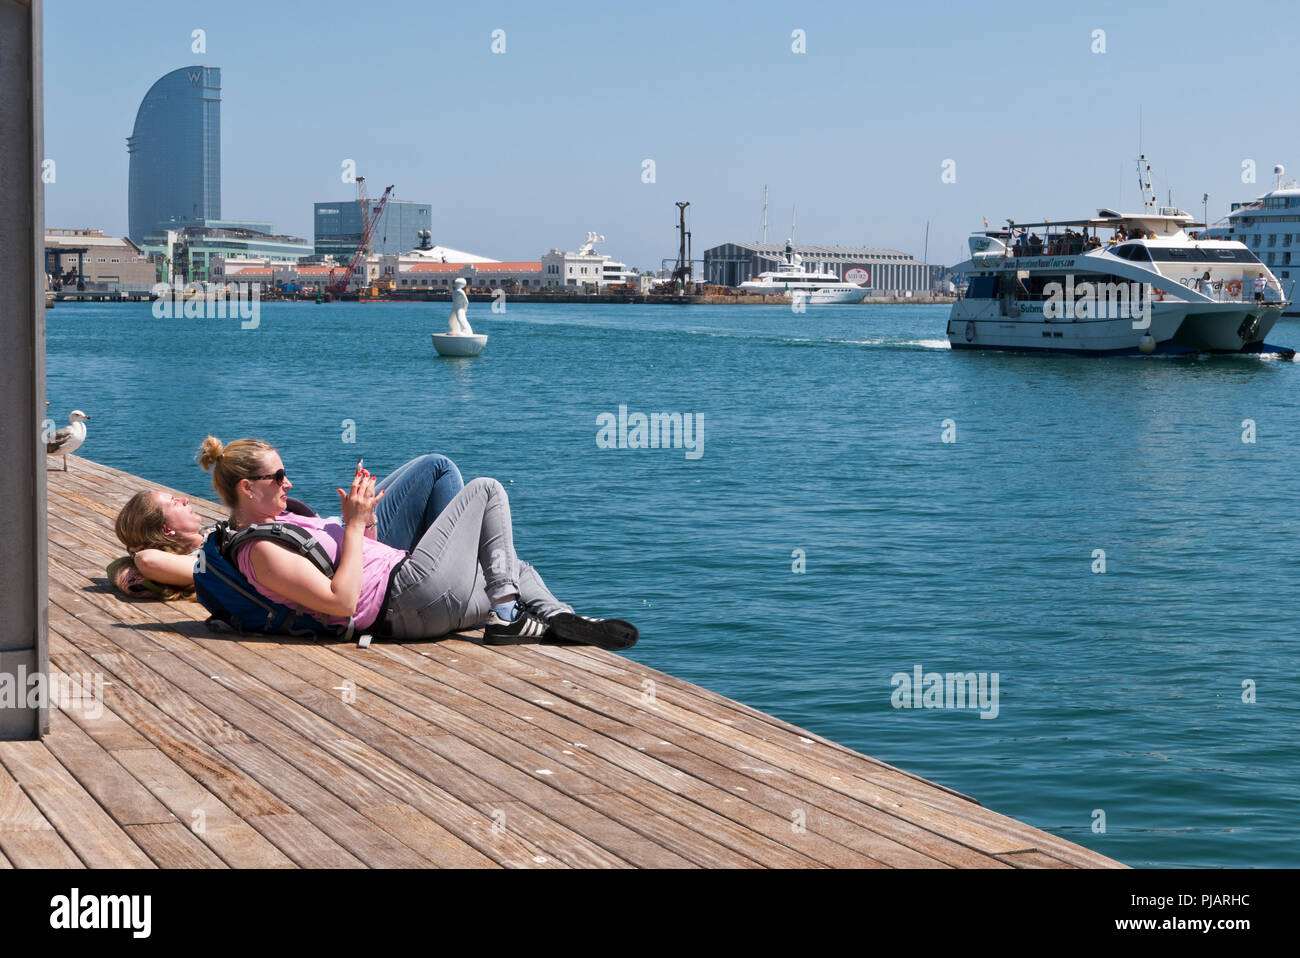 Deux jeunes femmes se trouvant sur le plancher en bois par le bord de la jetée, l'un d'entre eux des messages sur son téléphone portable, Barcelone, Espagne Banque D'Images